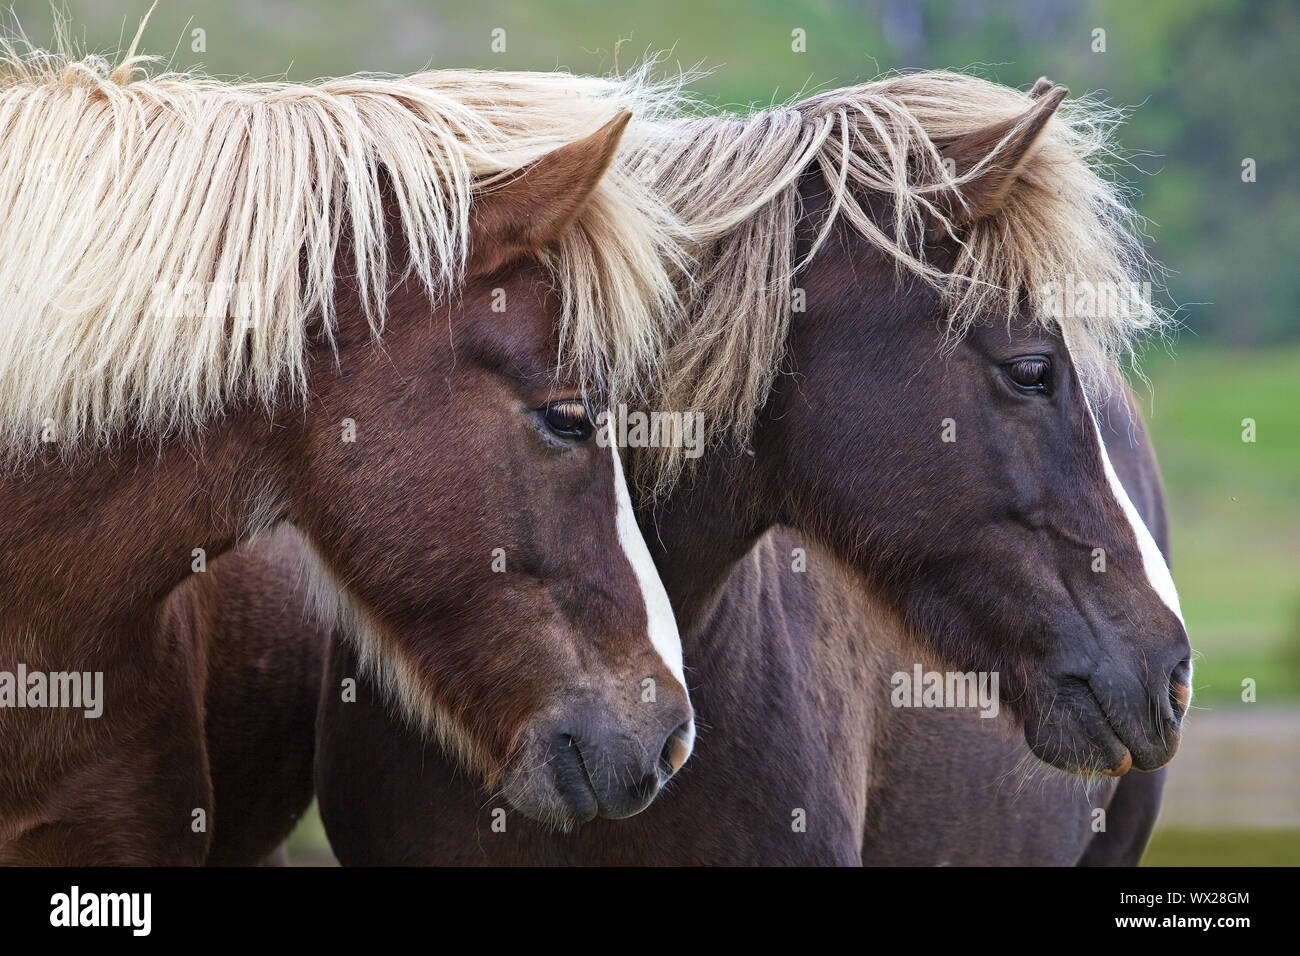 Islandese cavallo (Equus caballus ferus), due cavalli islandesi in piedi insieme, ritratto, Islanda Foto Stock